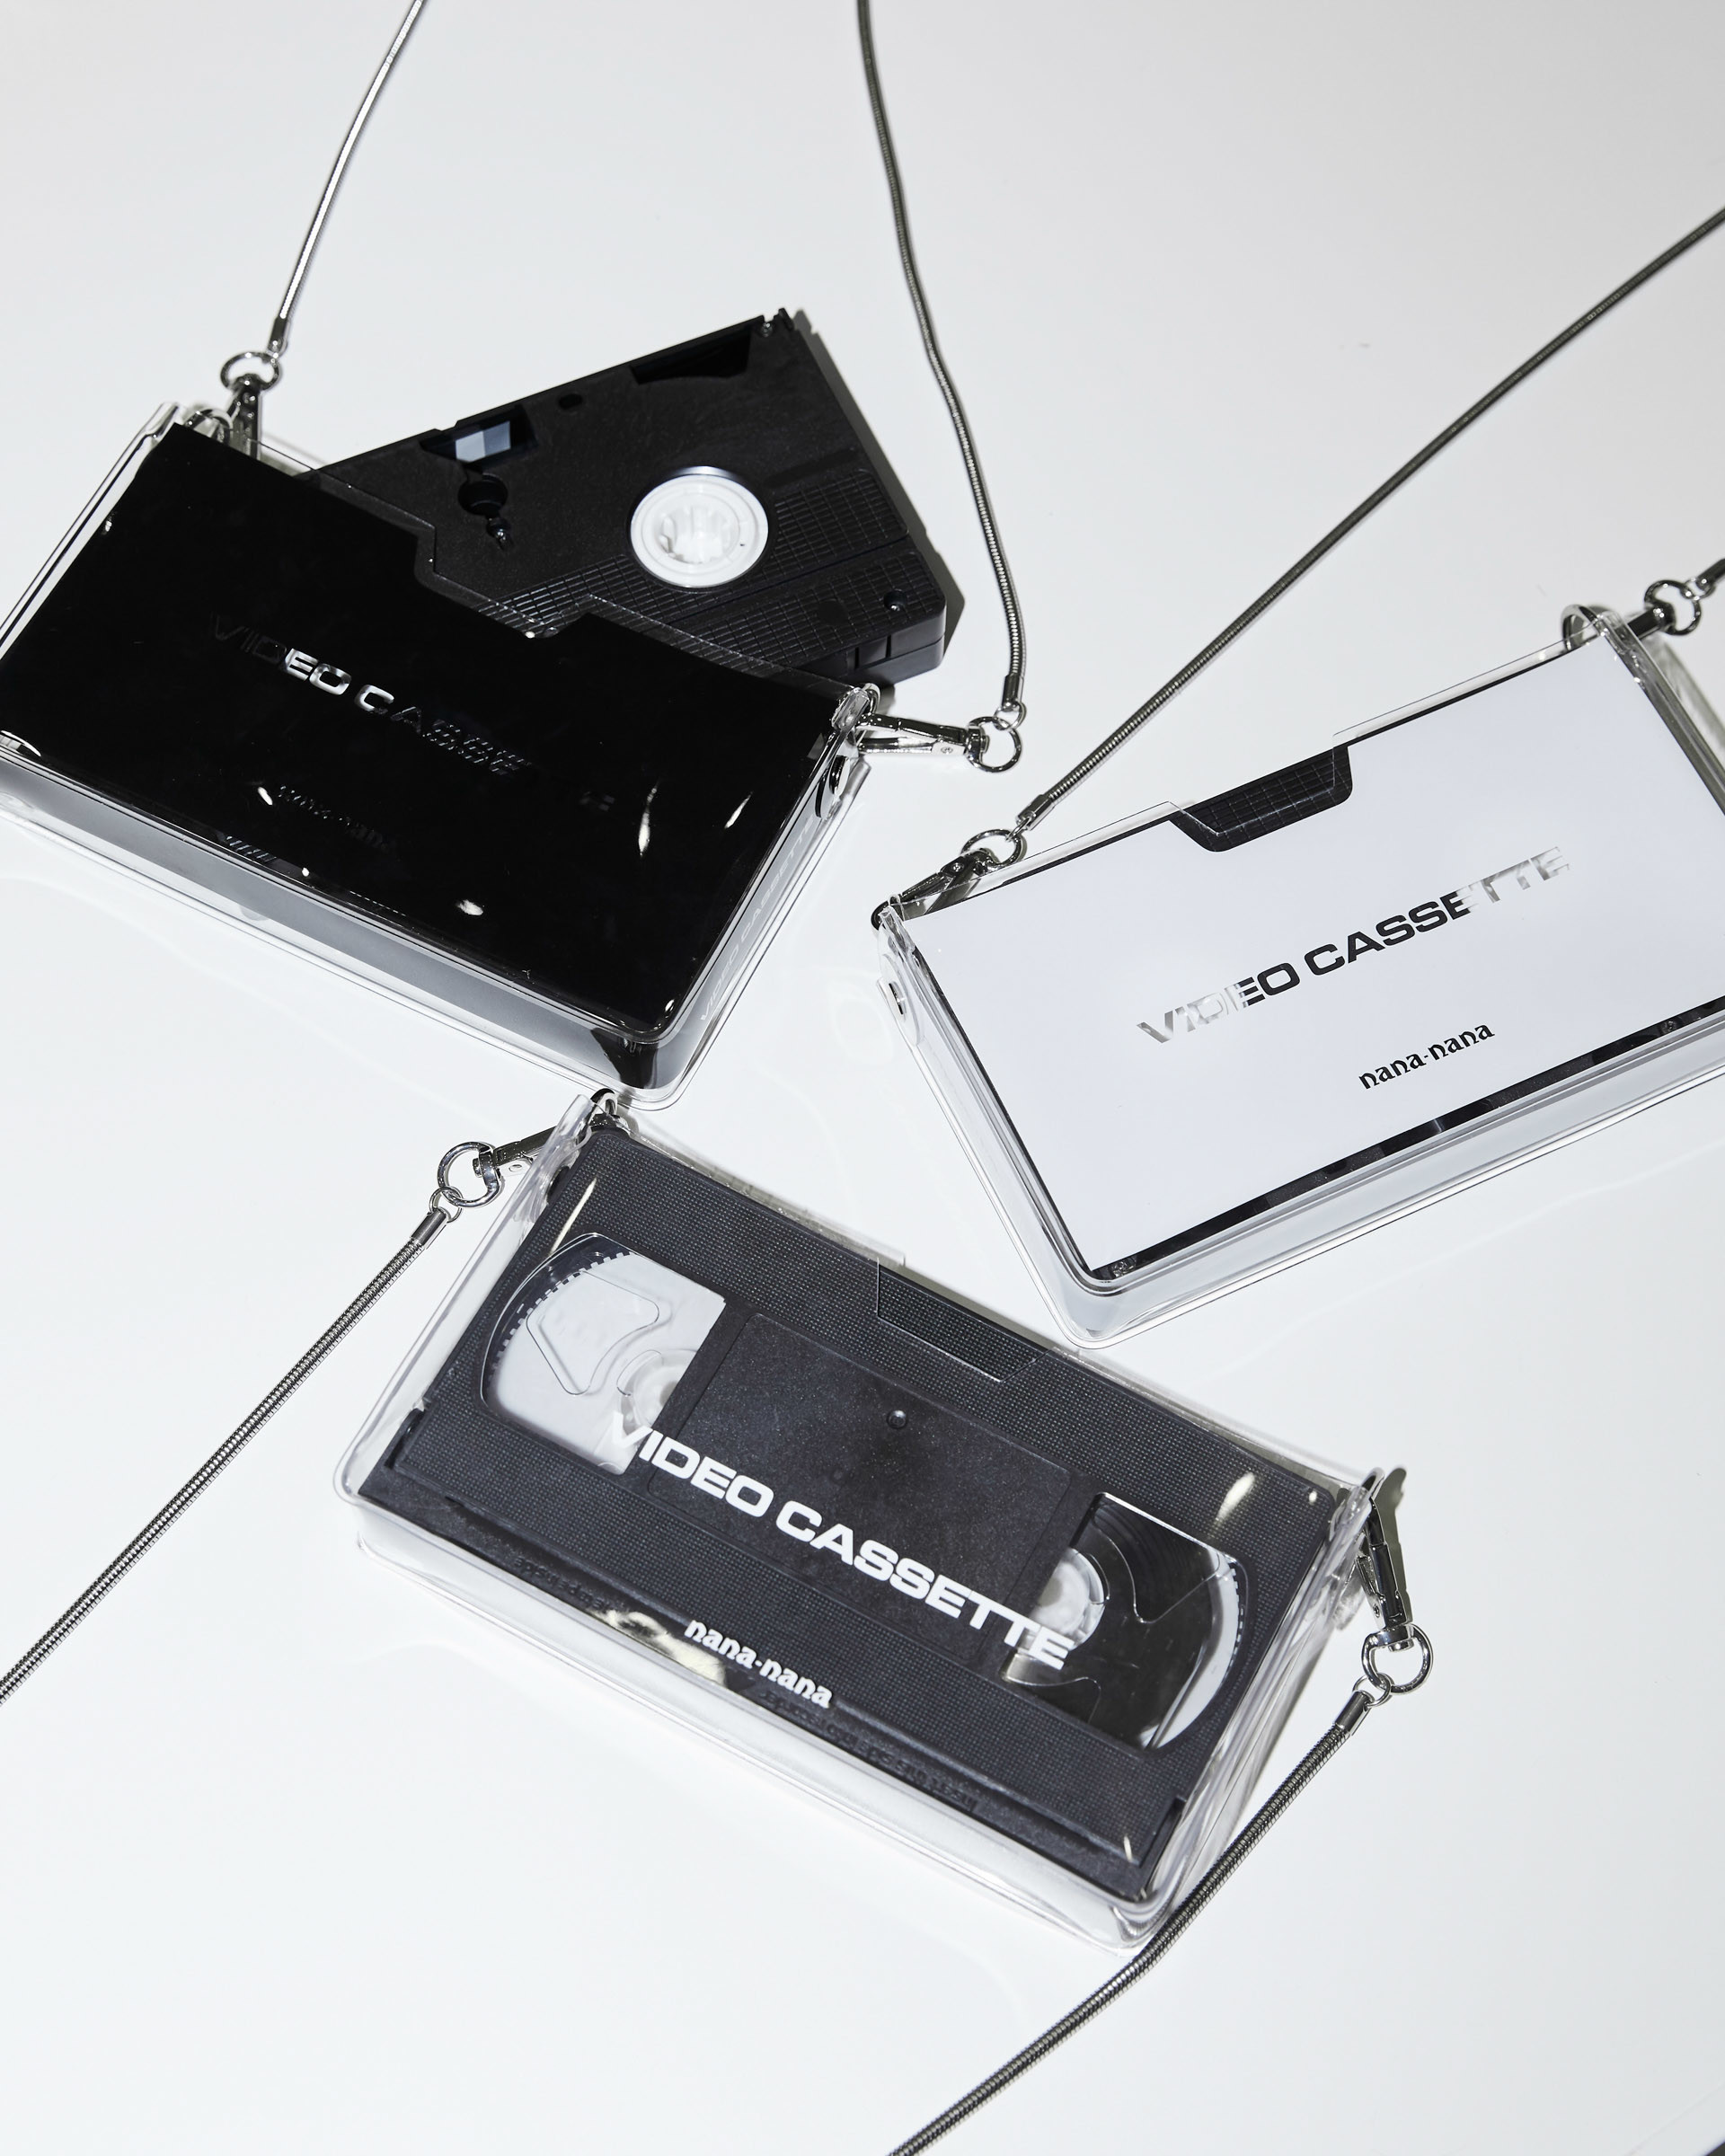 ナナナナ」ビデオテープサイズの新作PVCバッグ発売、用紙サイズからはレザー製が新登場